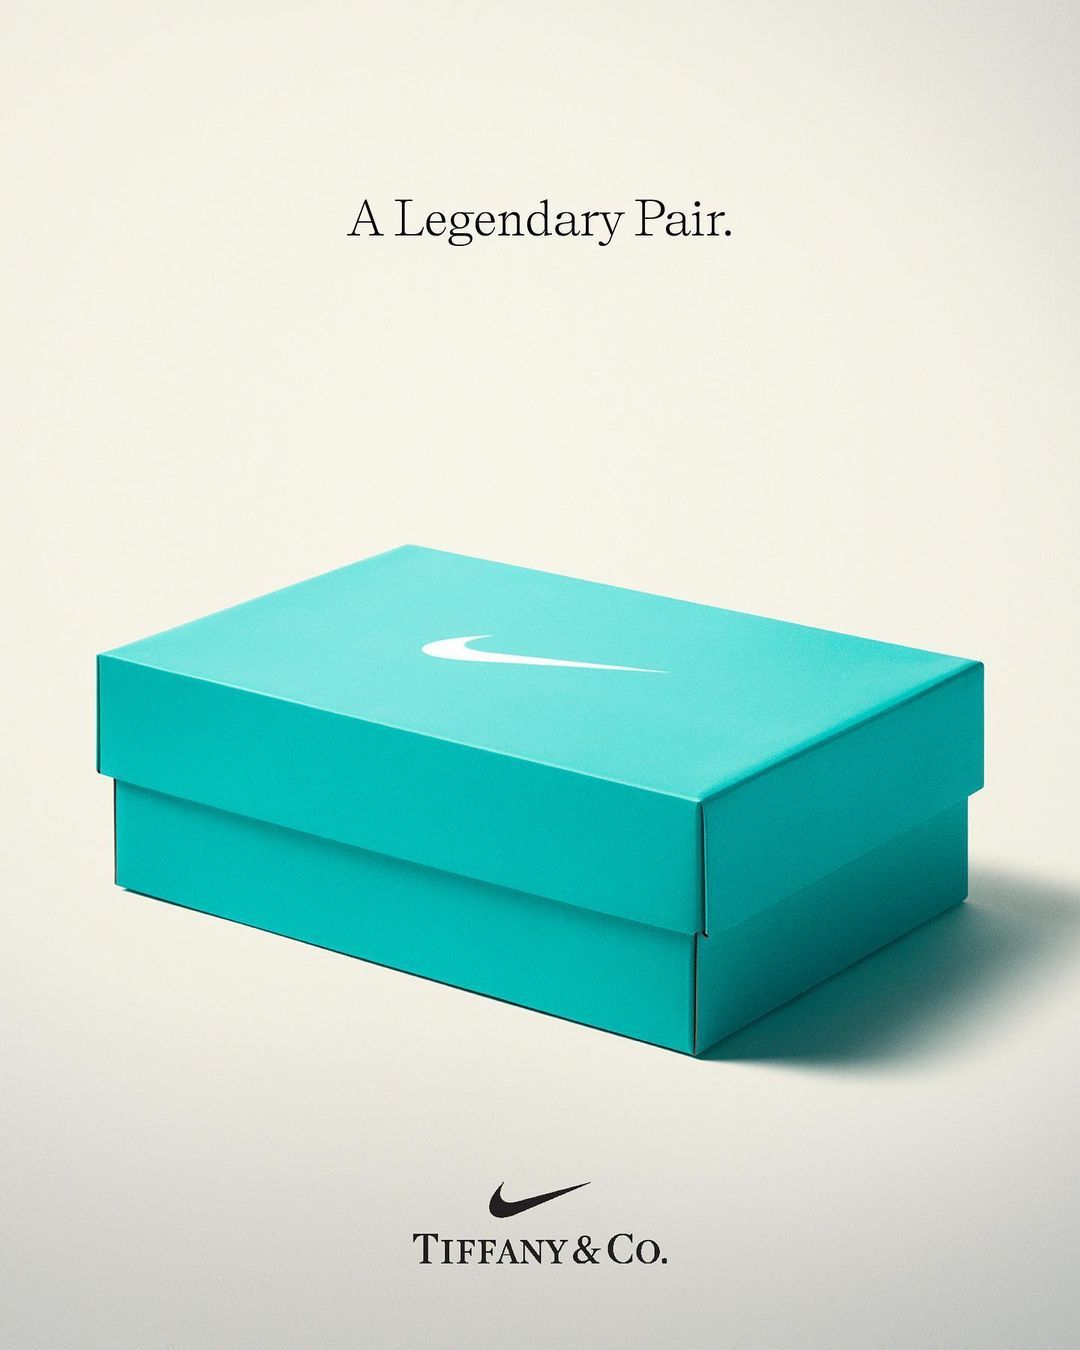 Las zapatillas deportivas de Nike x Tiffany que harán historia